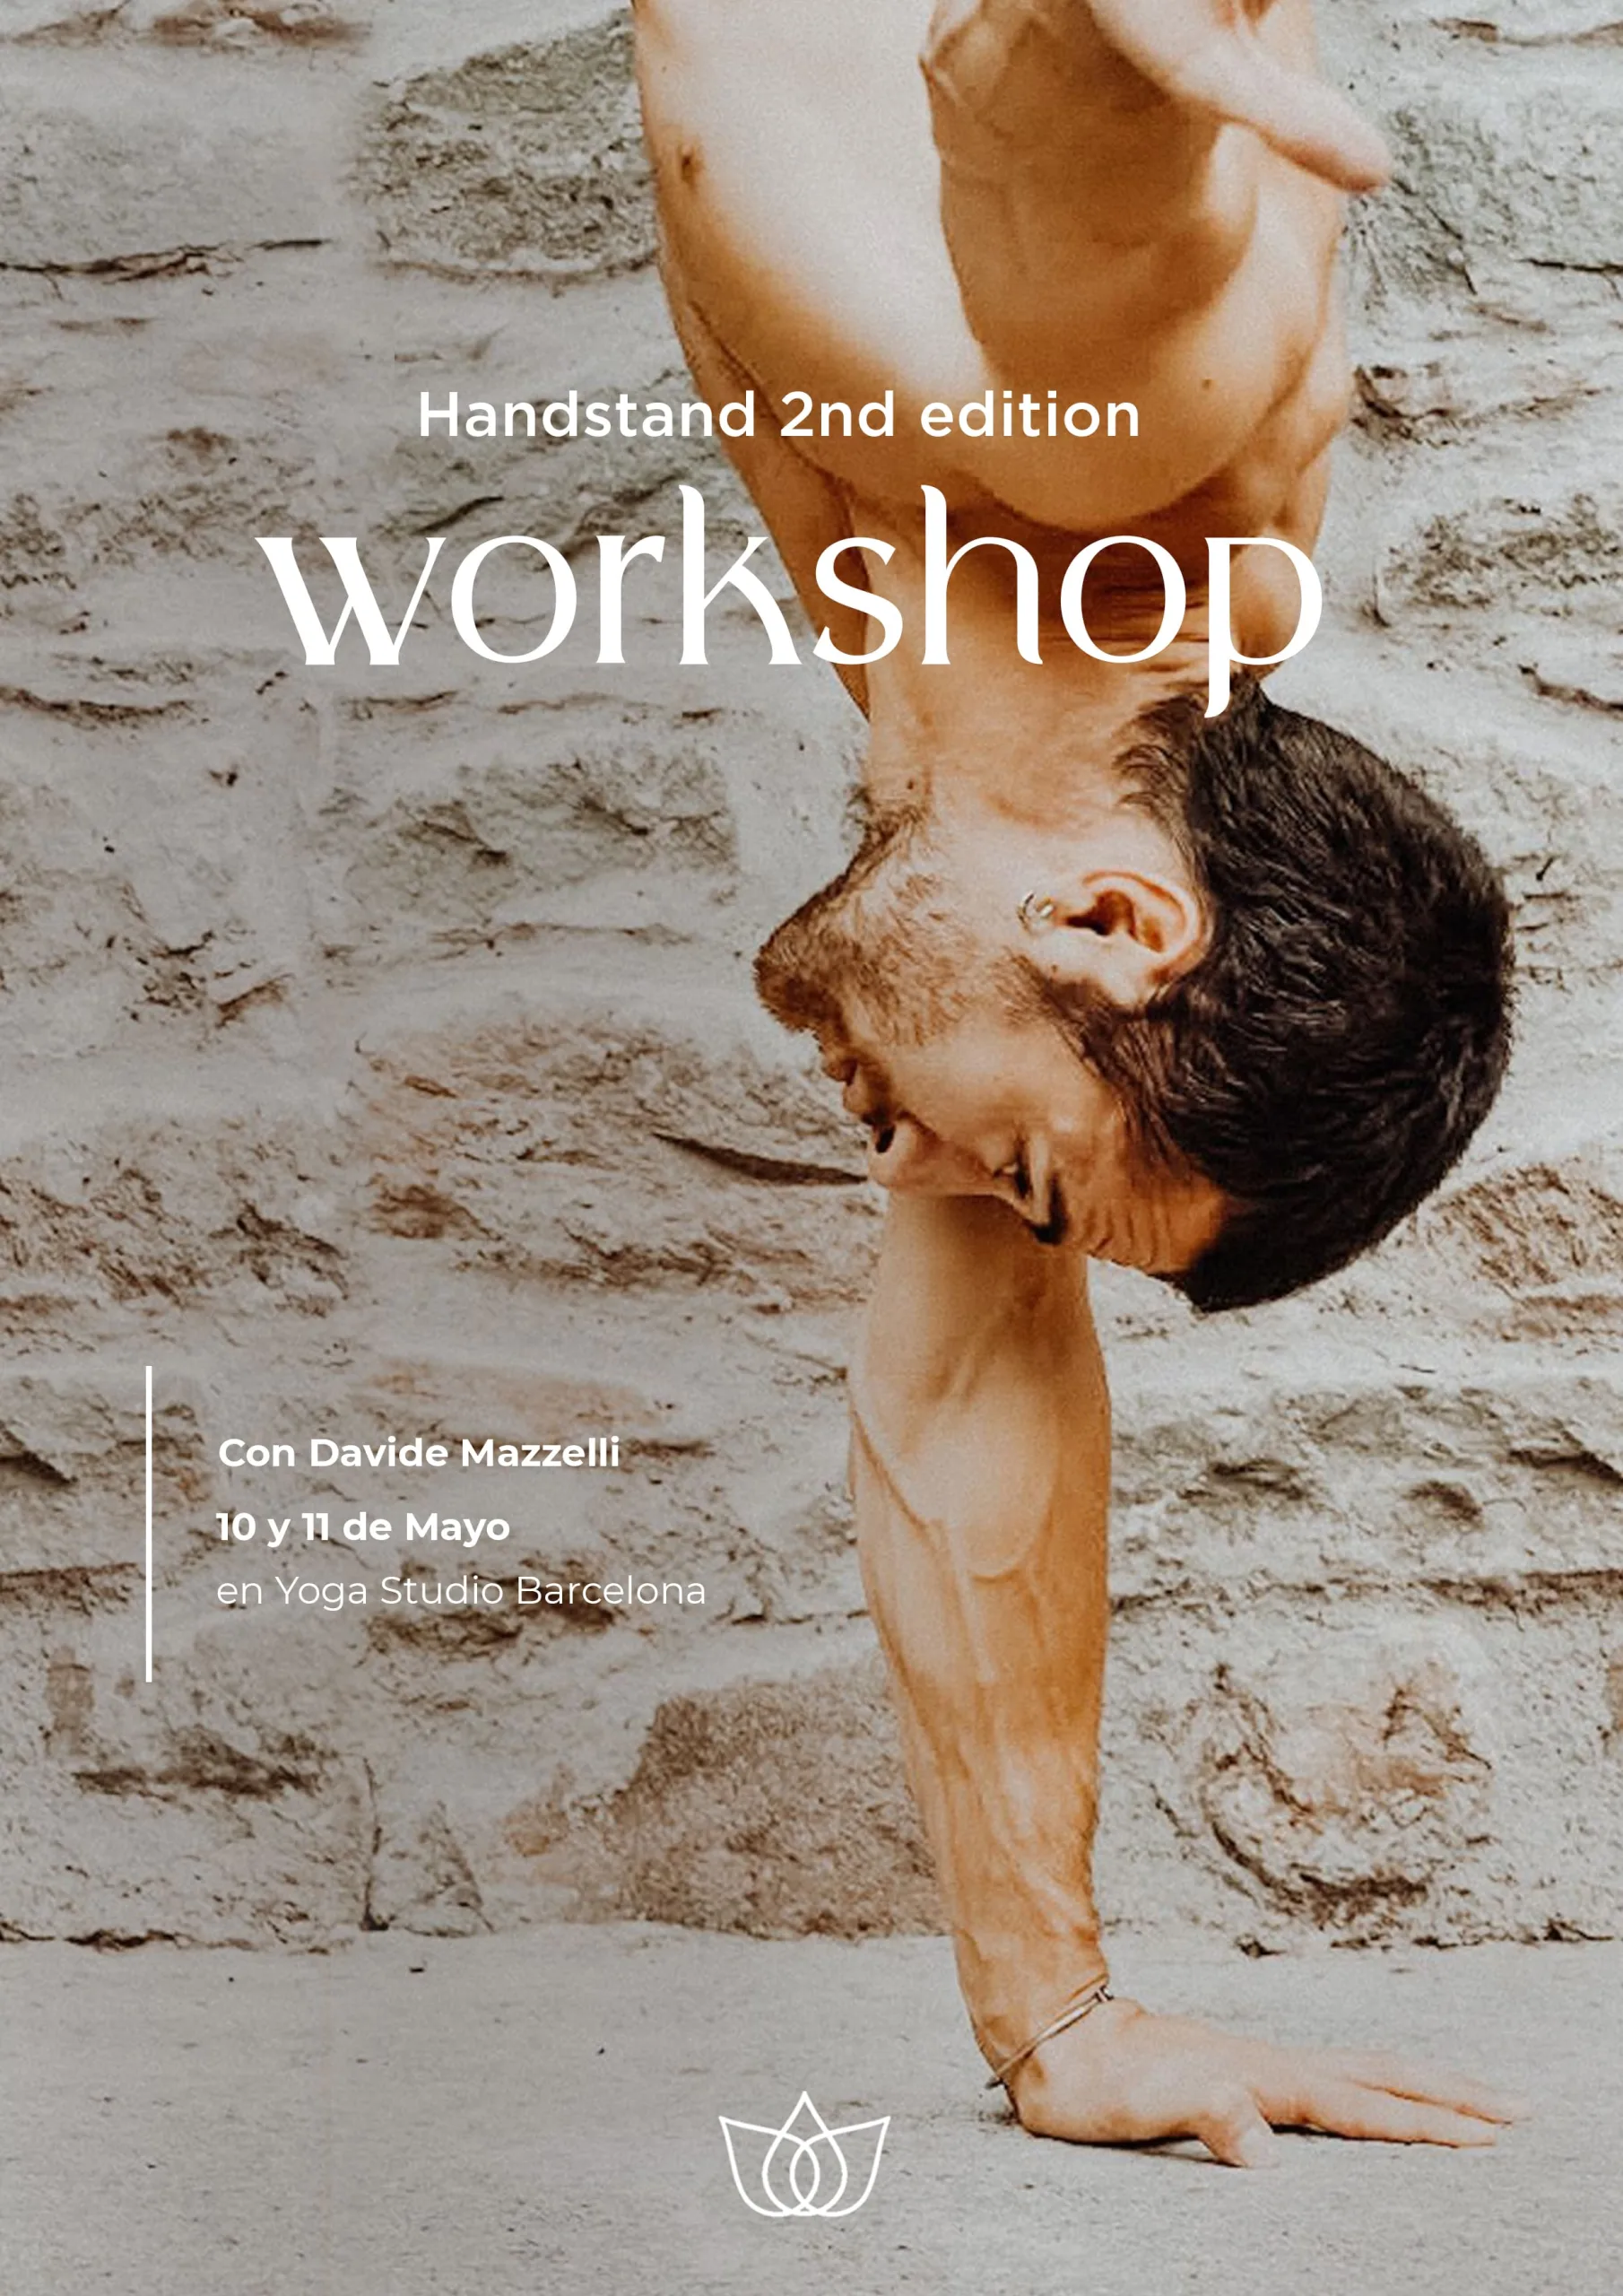 Curso de Handstand en Yoga Studio Barcelona.